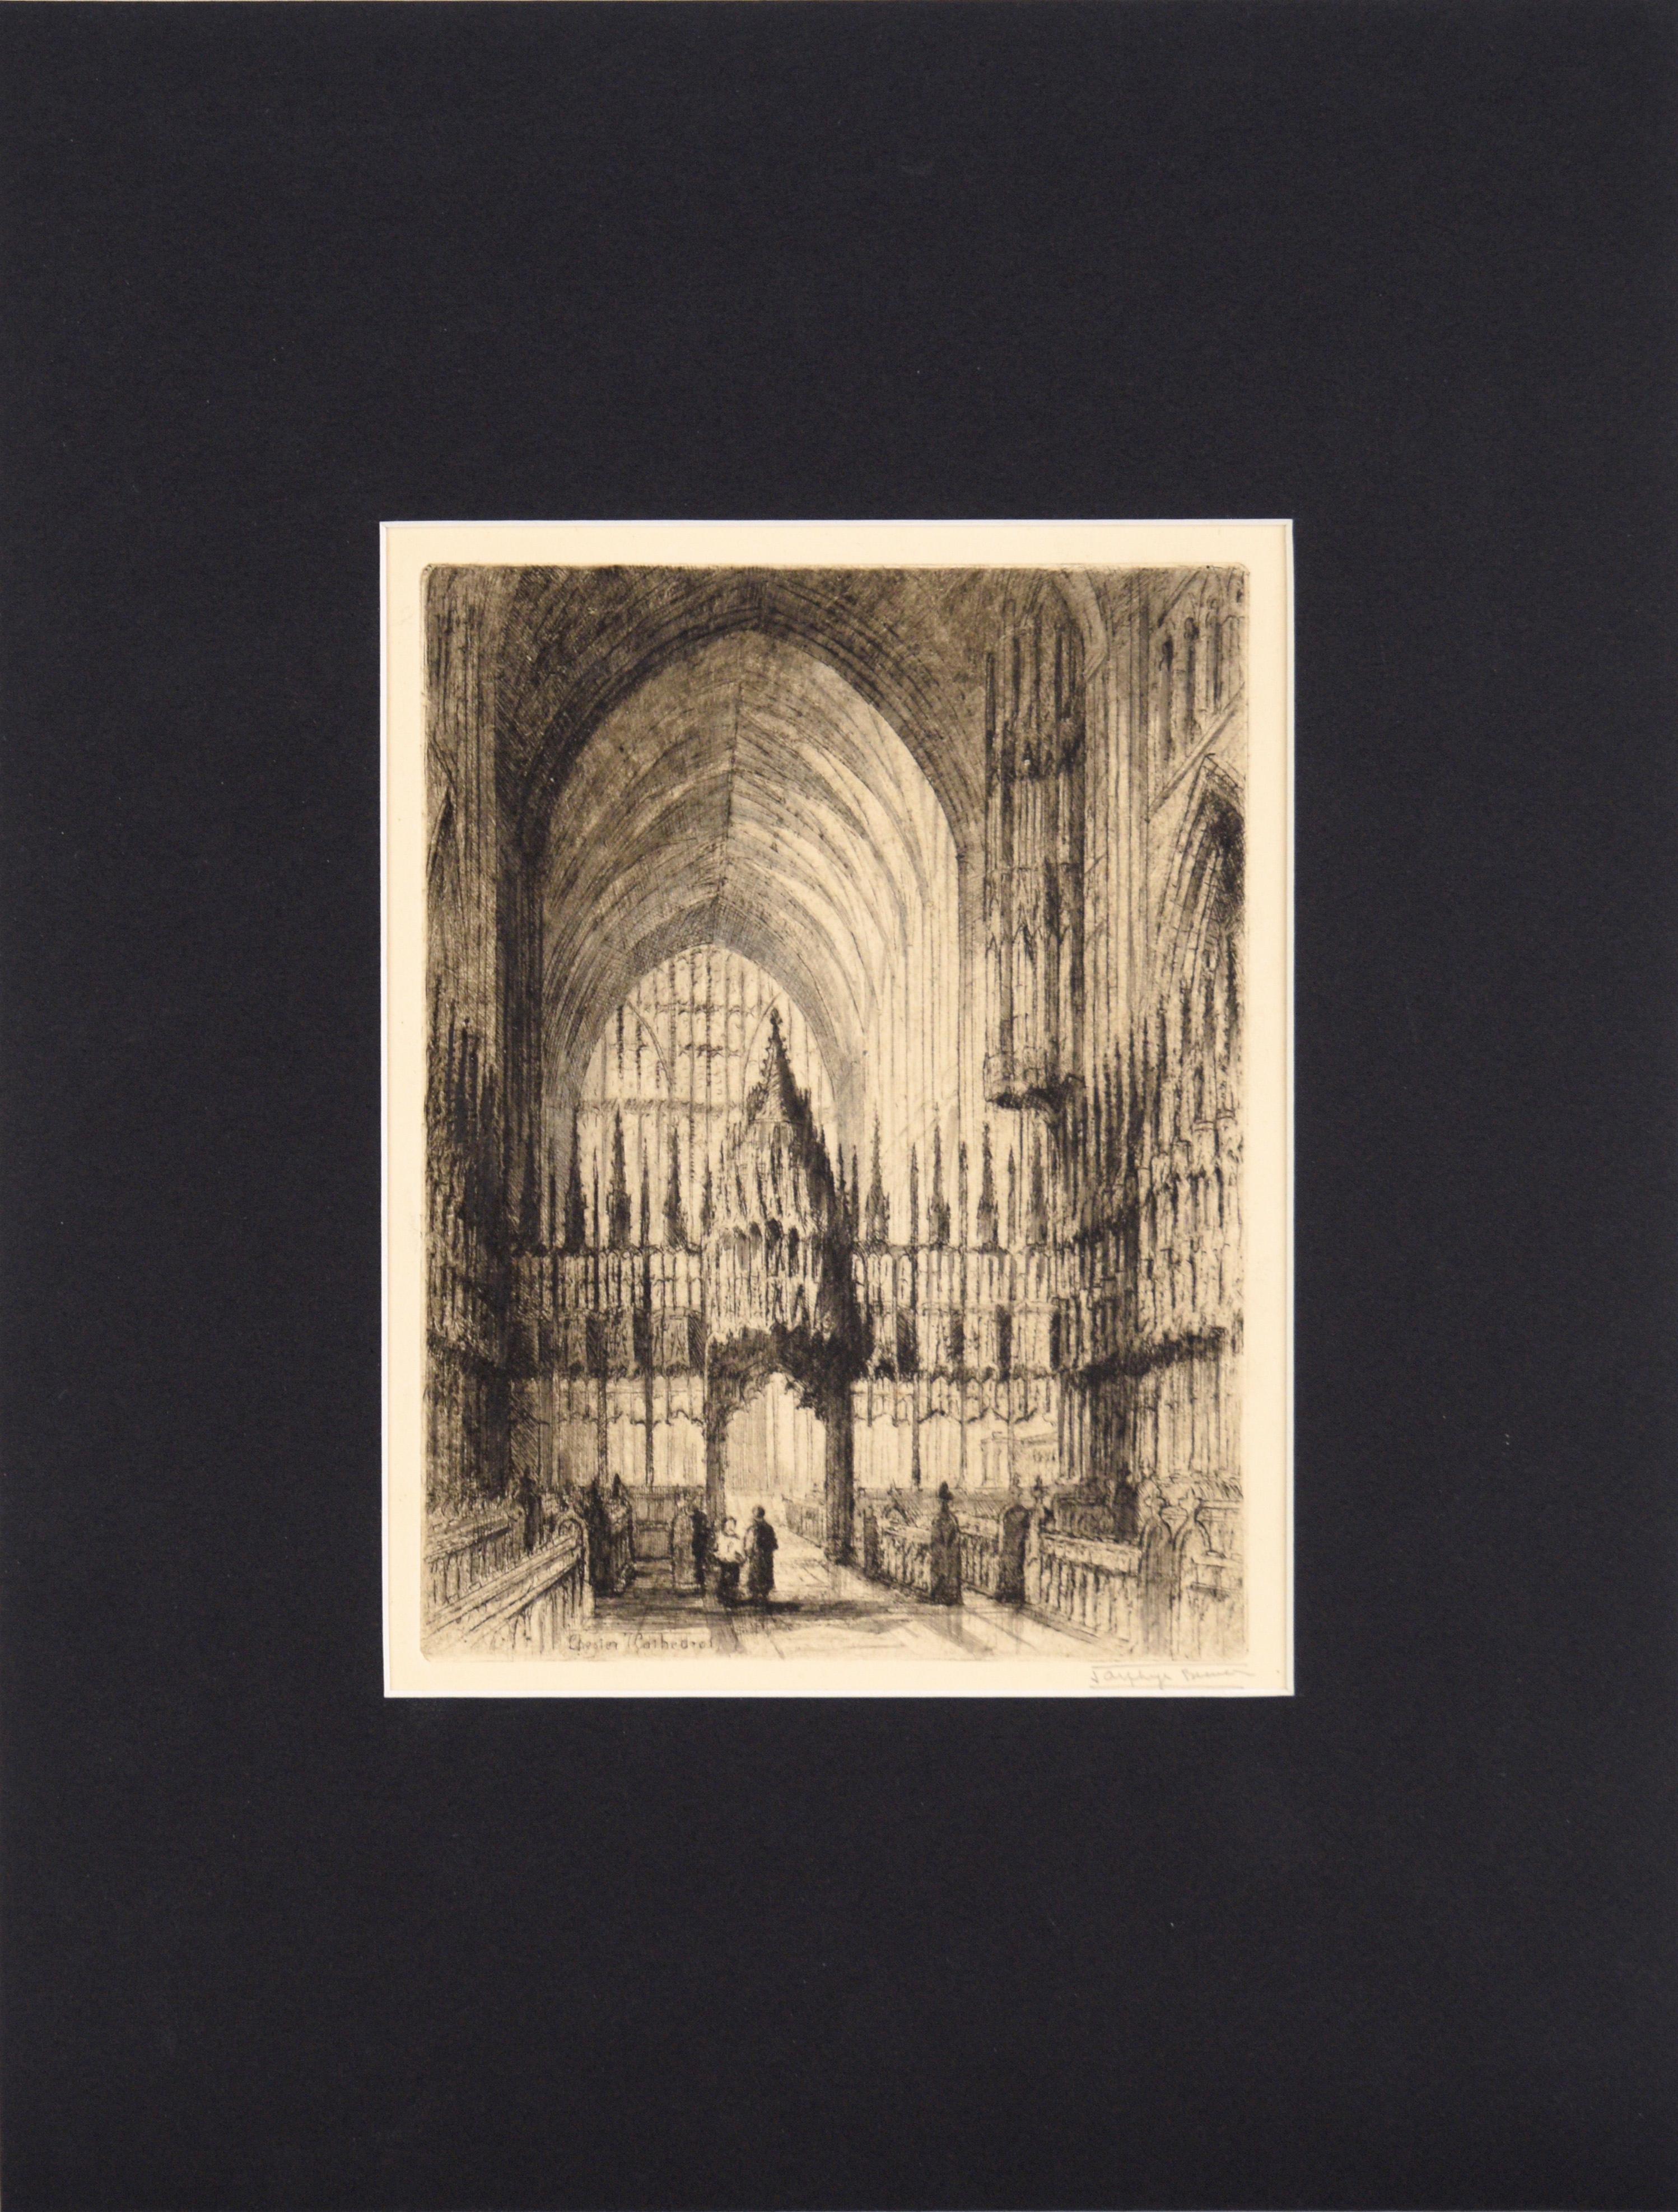 Chester-Kathedrale – Kaltnadelradierung in Tinte auf Papier